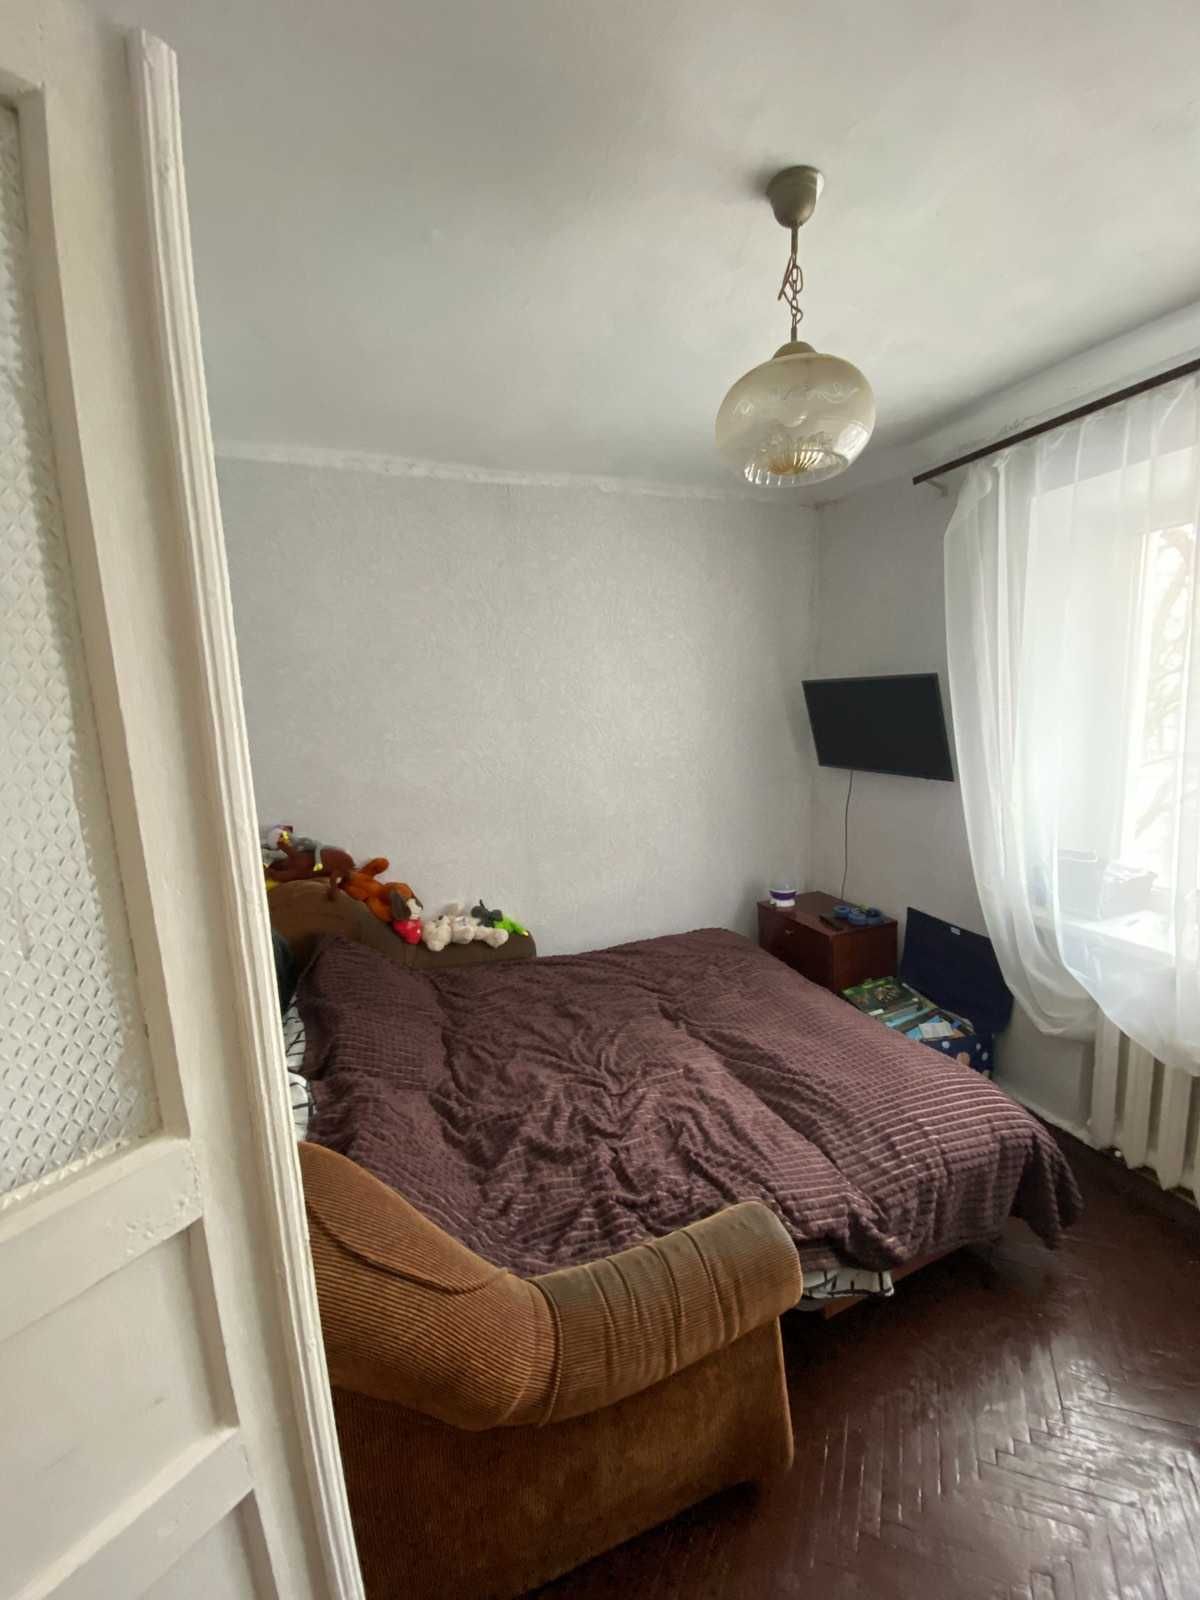 продаю 3-х комнатную квартиру в Ингульском районе .город Николаев.